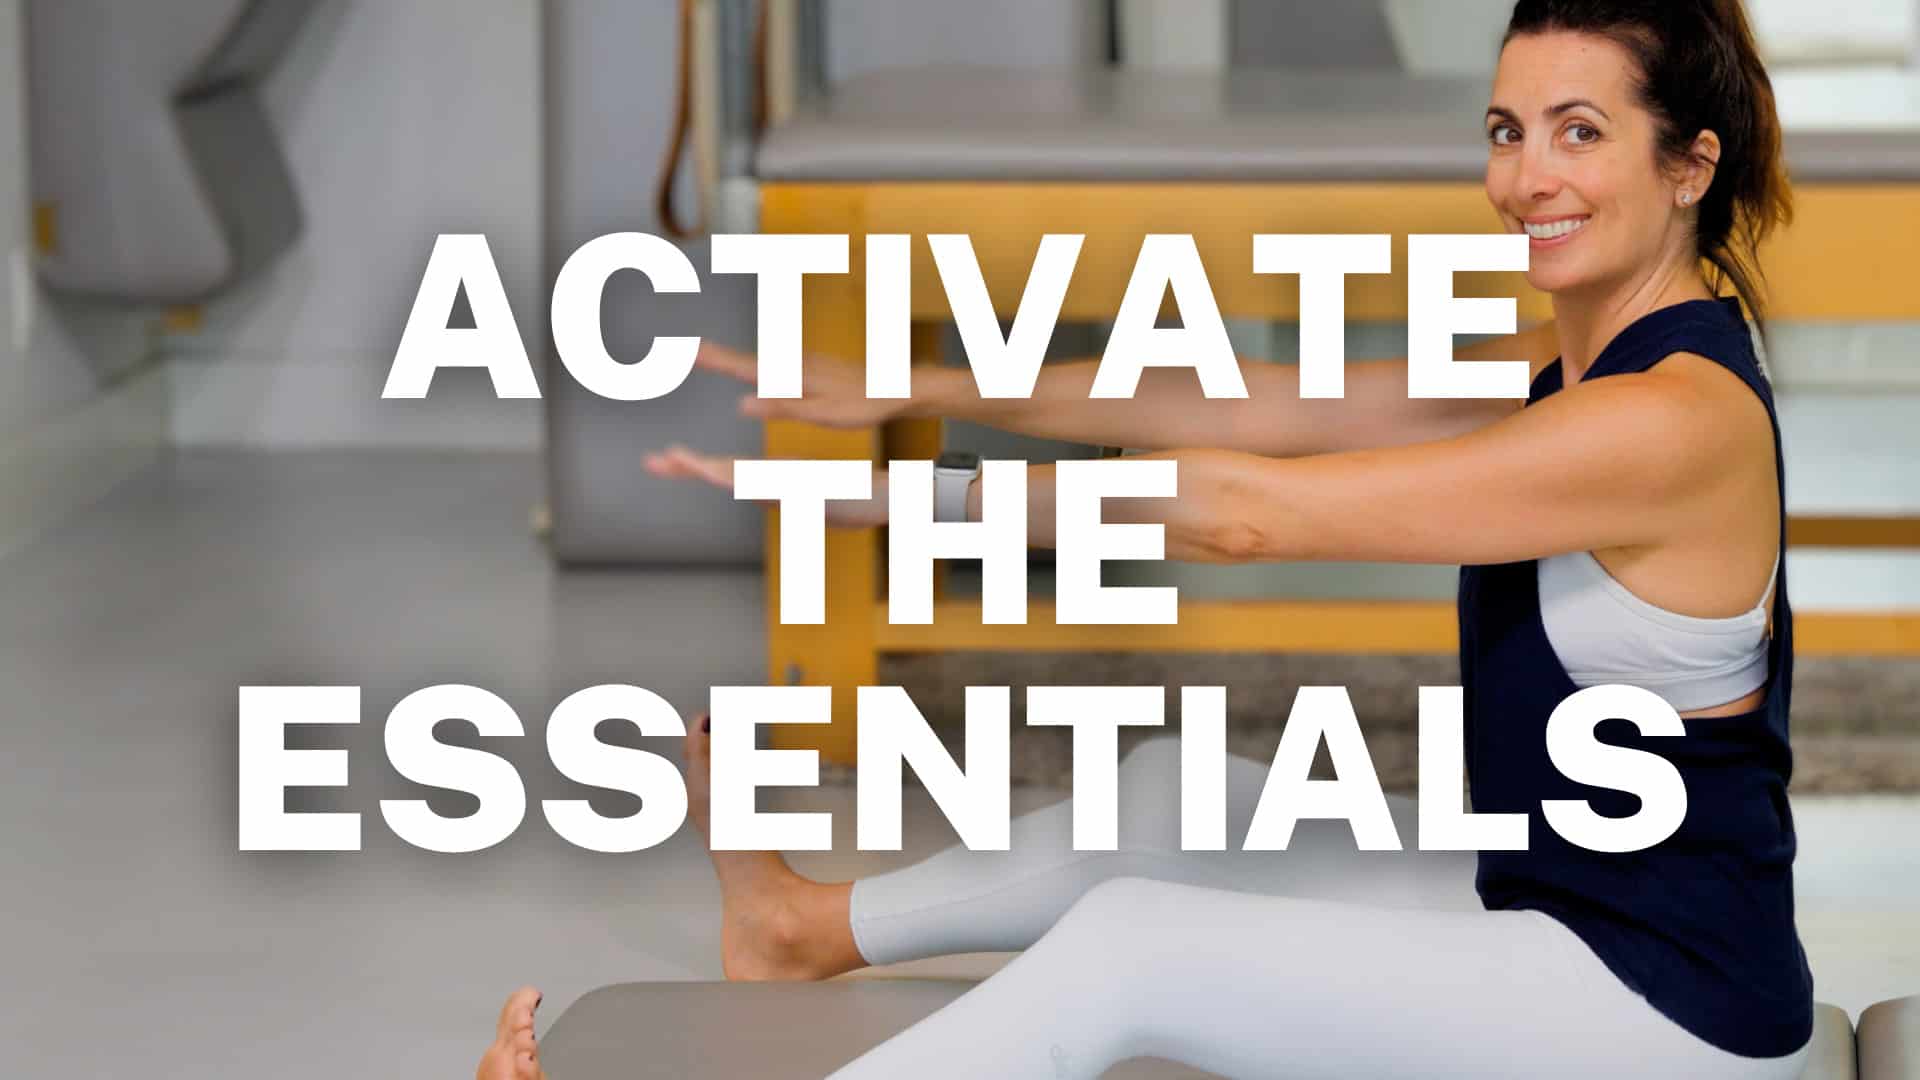 Beginner Pilates Program to Activate the Essentials